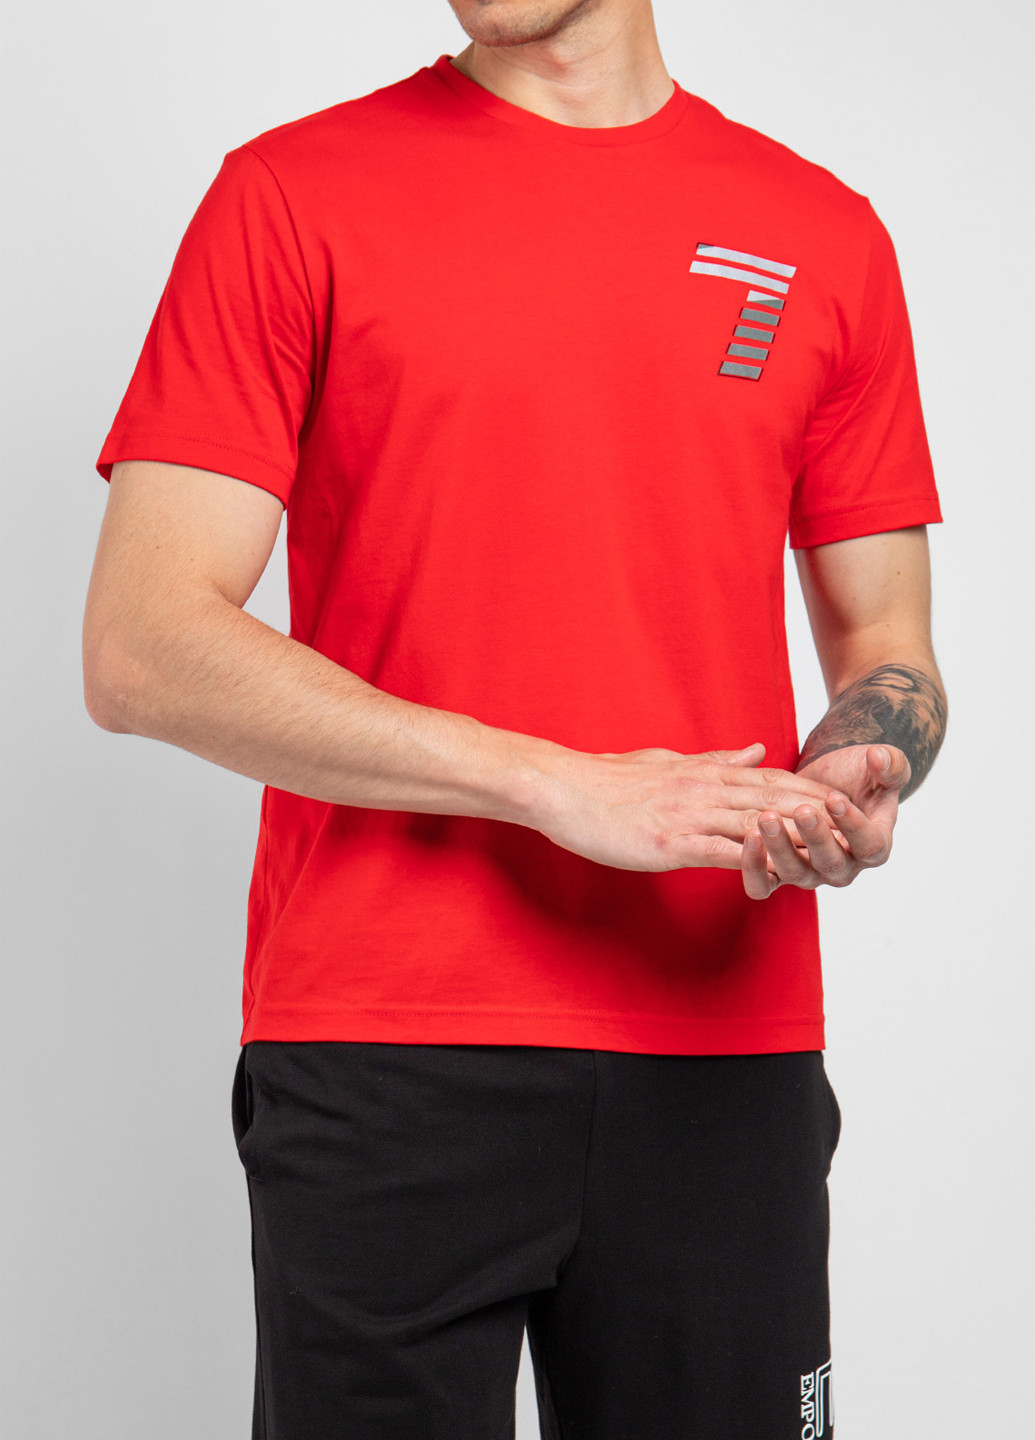 Червона футболка EA7